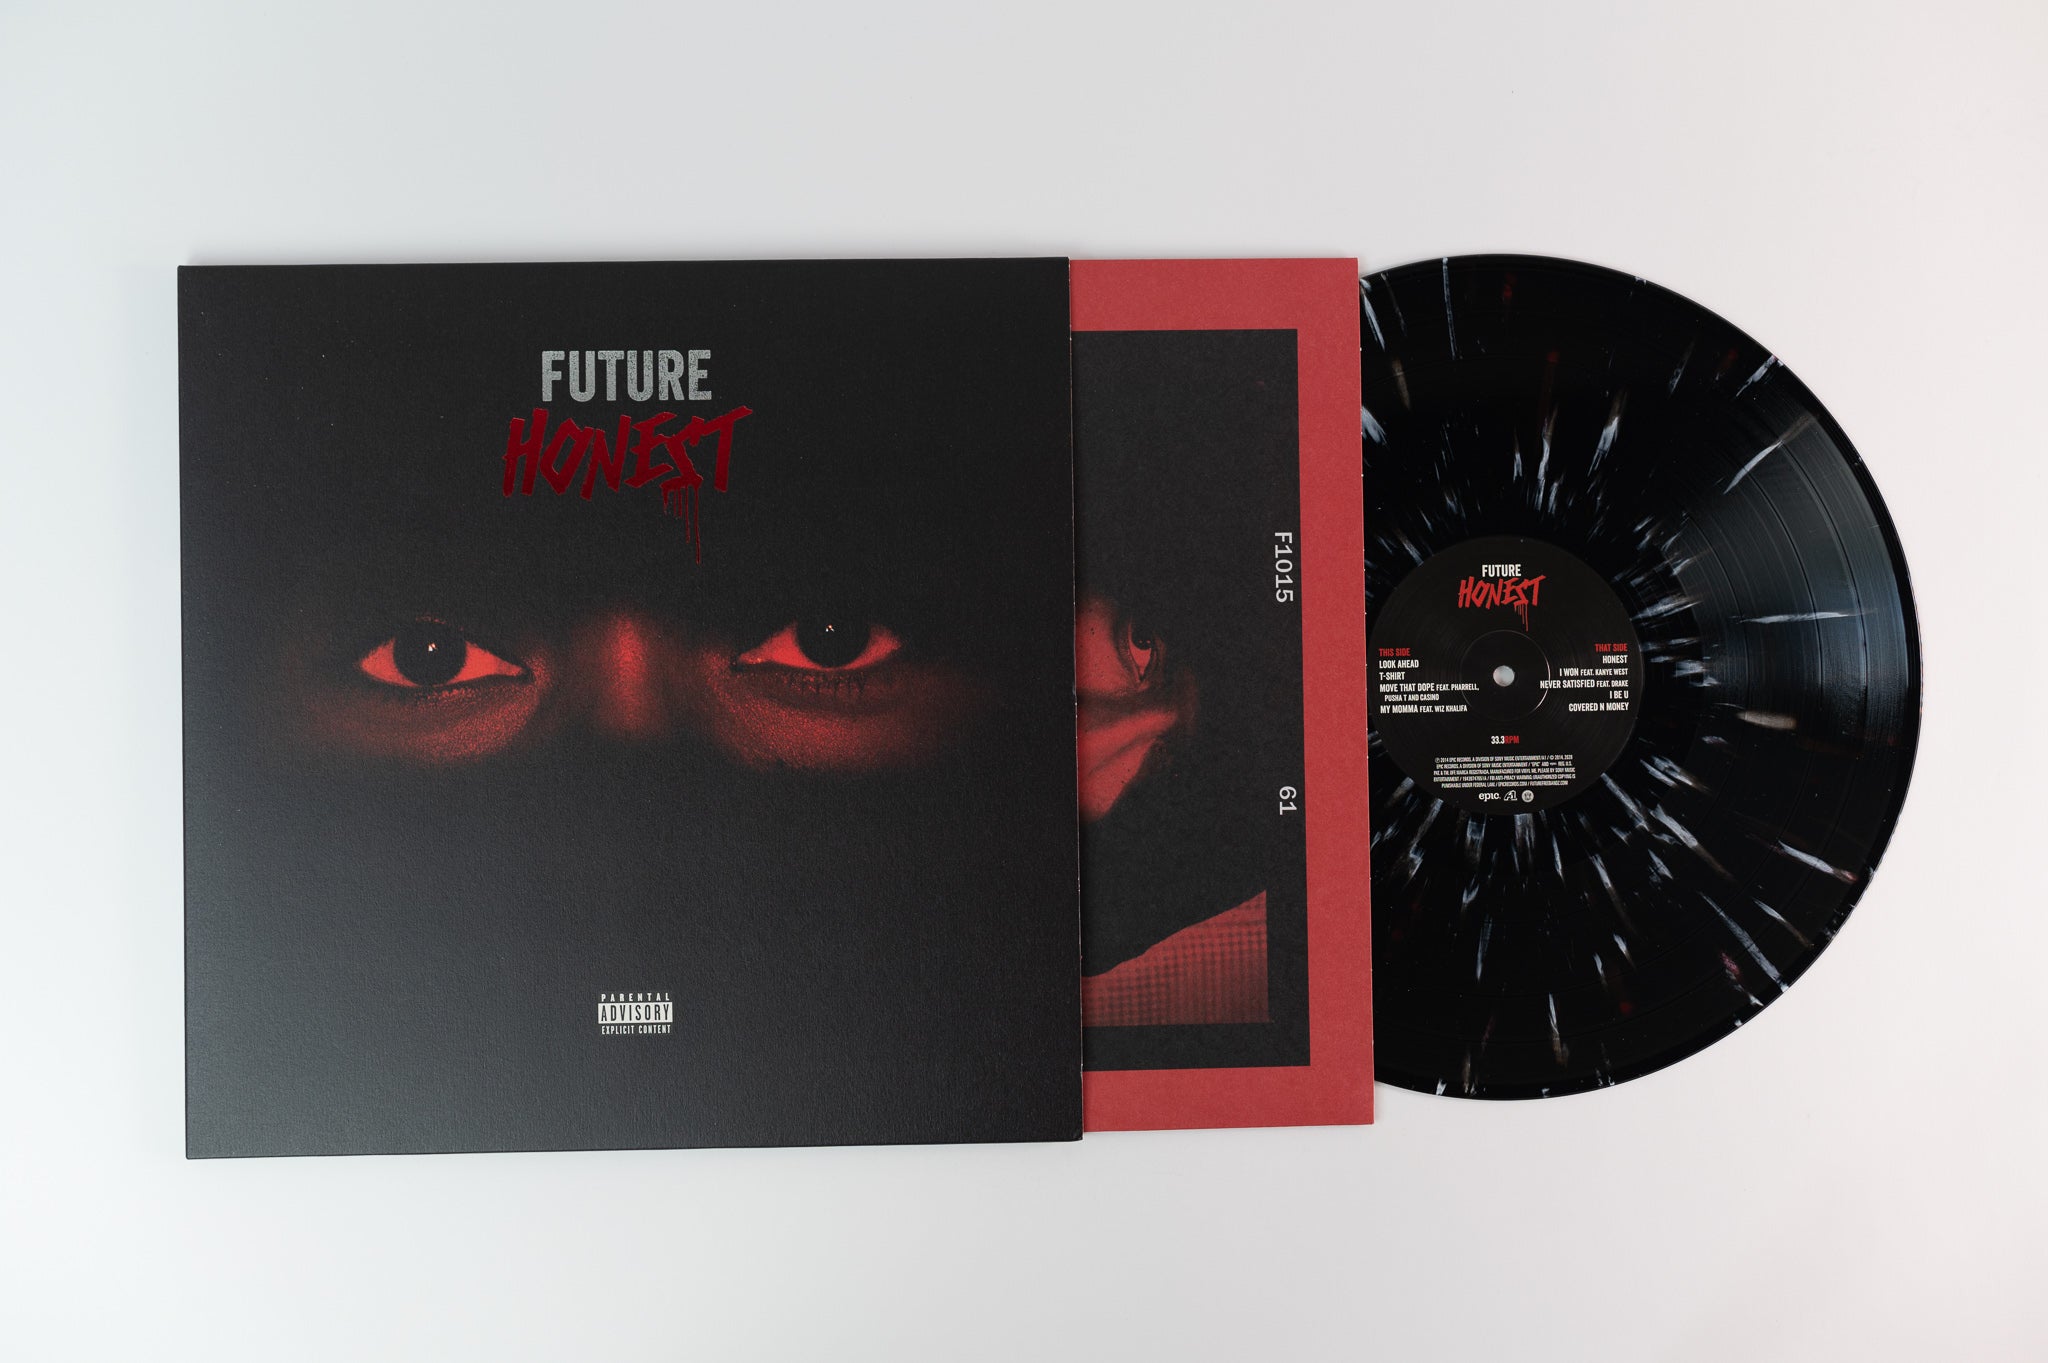 Future - Honest on Legacy Vinyl Me Please Limited Reissue Black White & Red Splatter